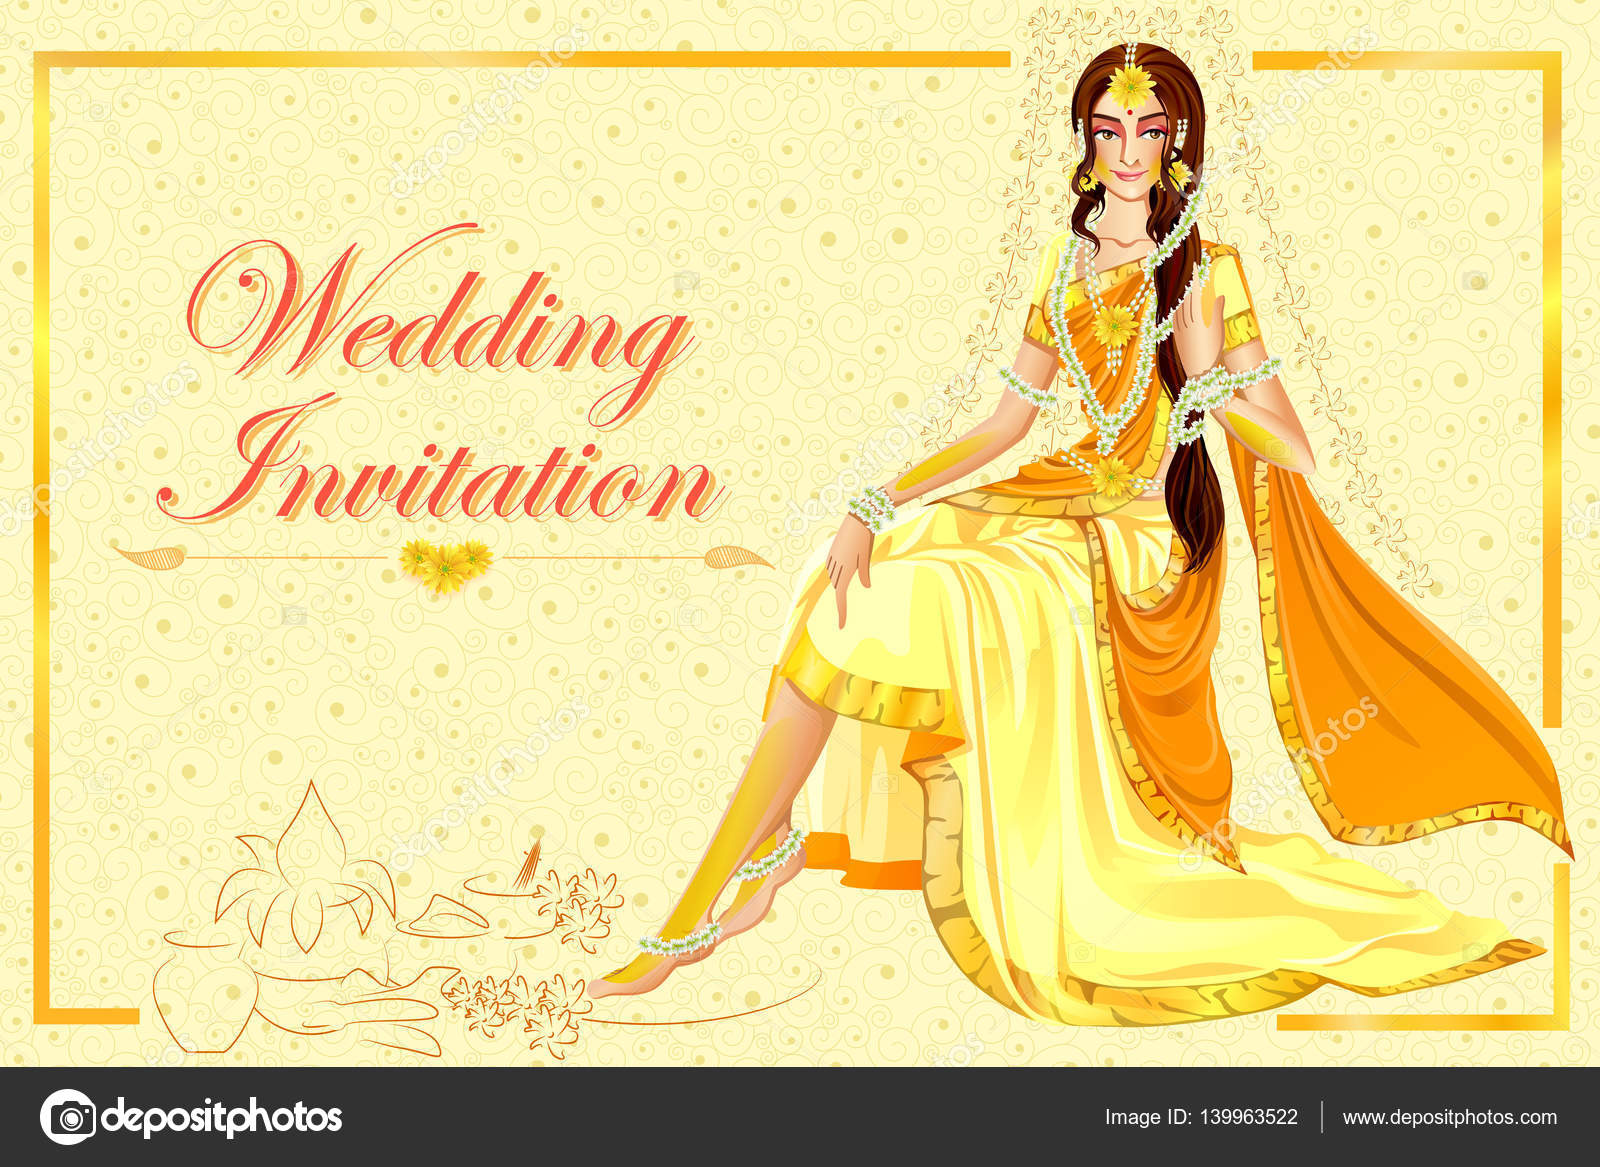 Tham gia vào một trong những truyền thống quan trọng nhất trong lễ cưới haldi Ấn Độ - hãy xem các vector của phụ nữ Ấn Độ trong lễ cưới haldi này để cảm nhận sự đẹp đẽ và phong cách truyền thống của họ!